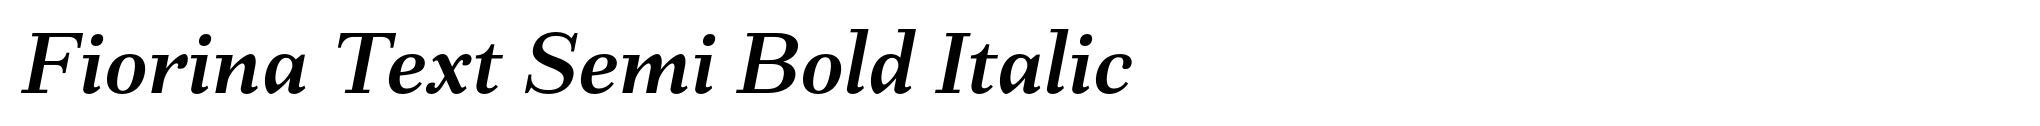 Fiorina Text Semi Bold Italic image